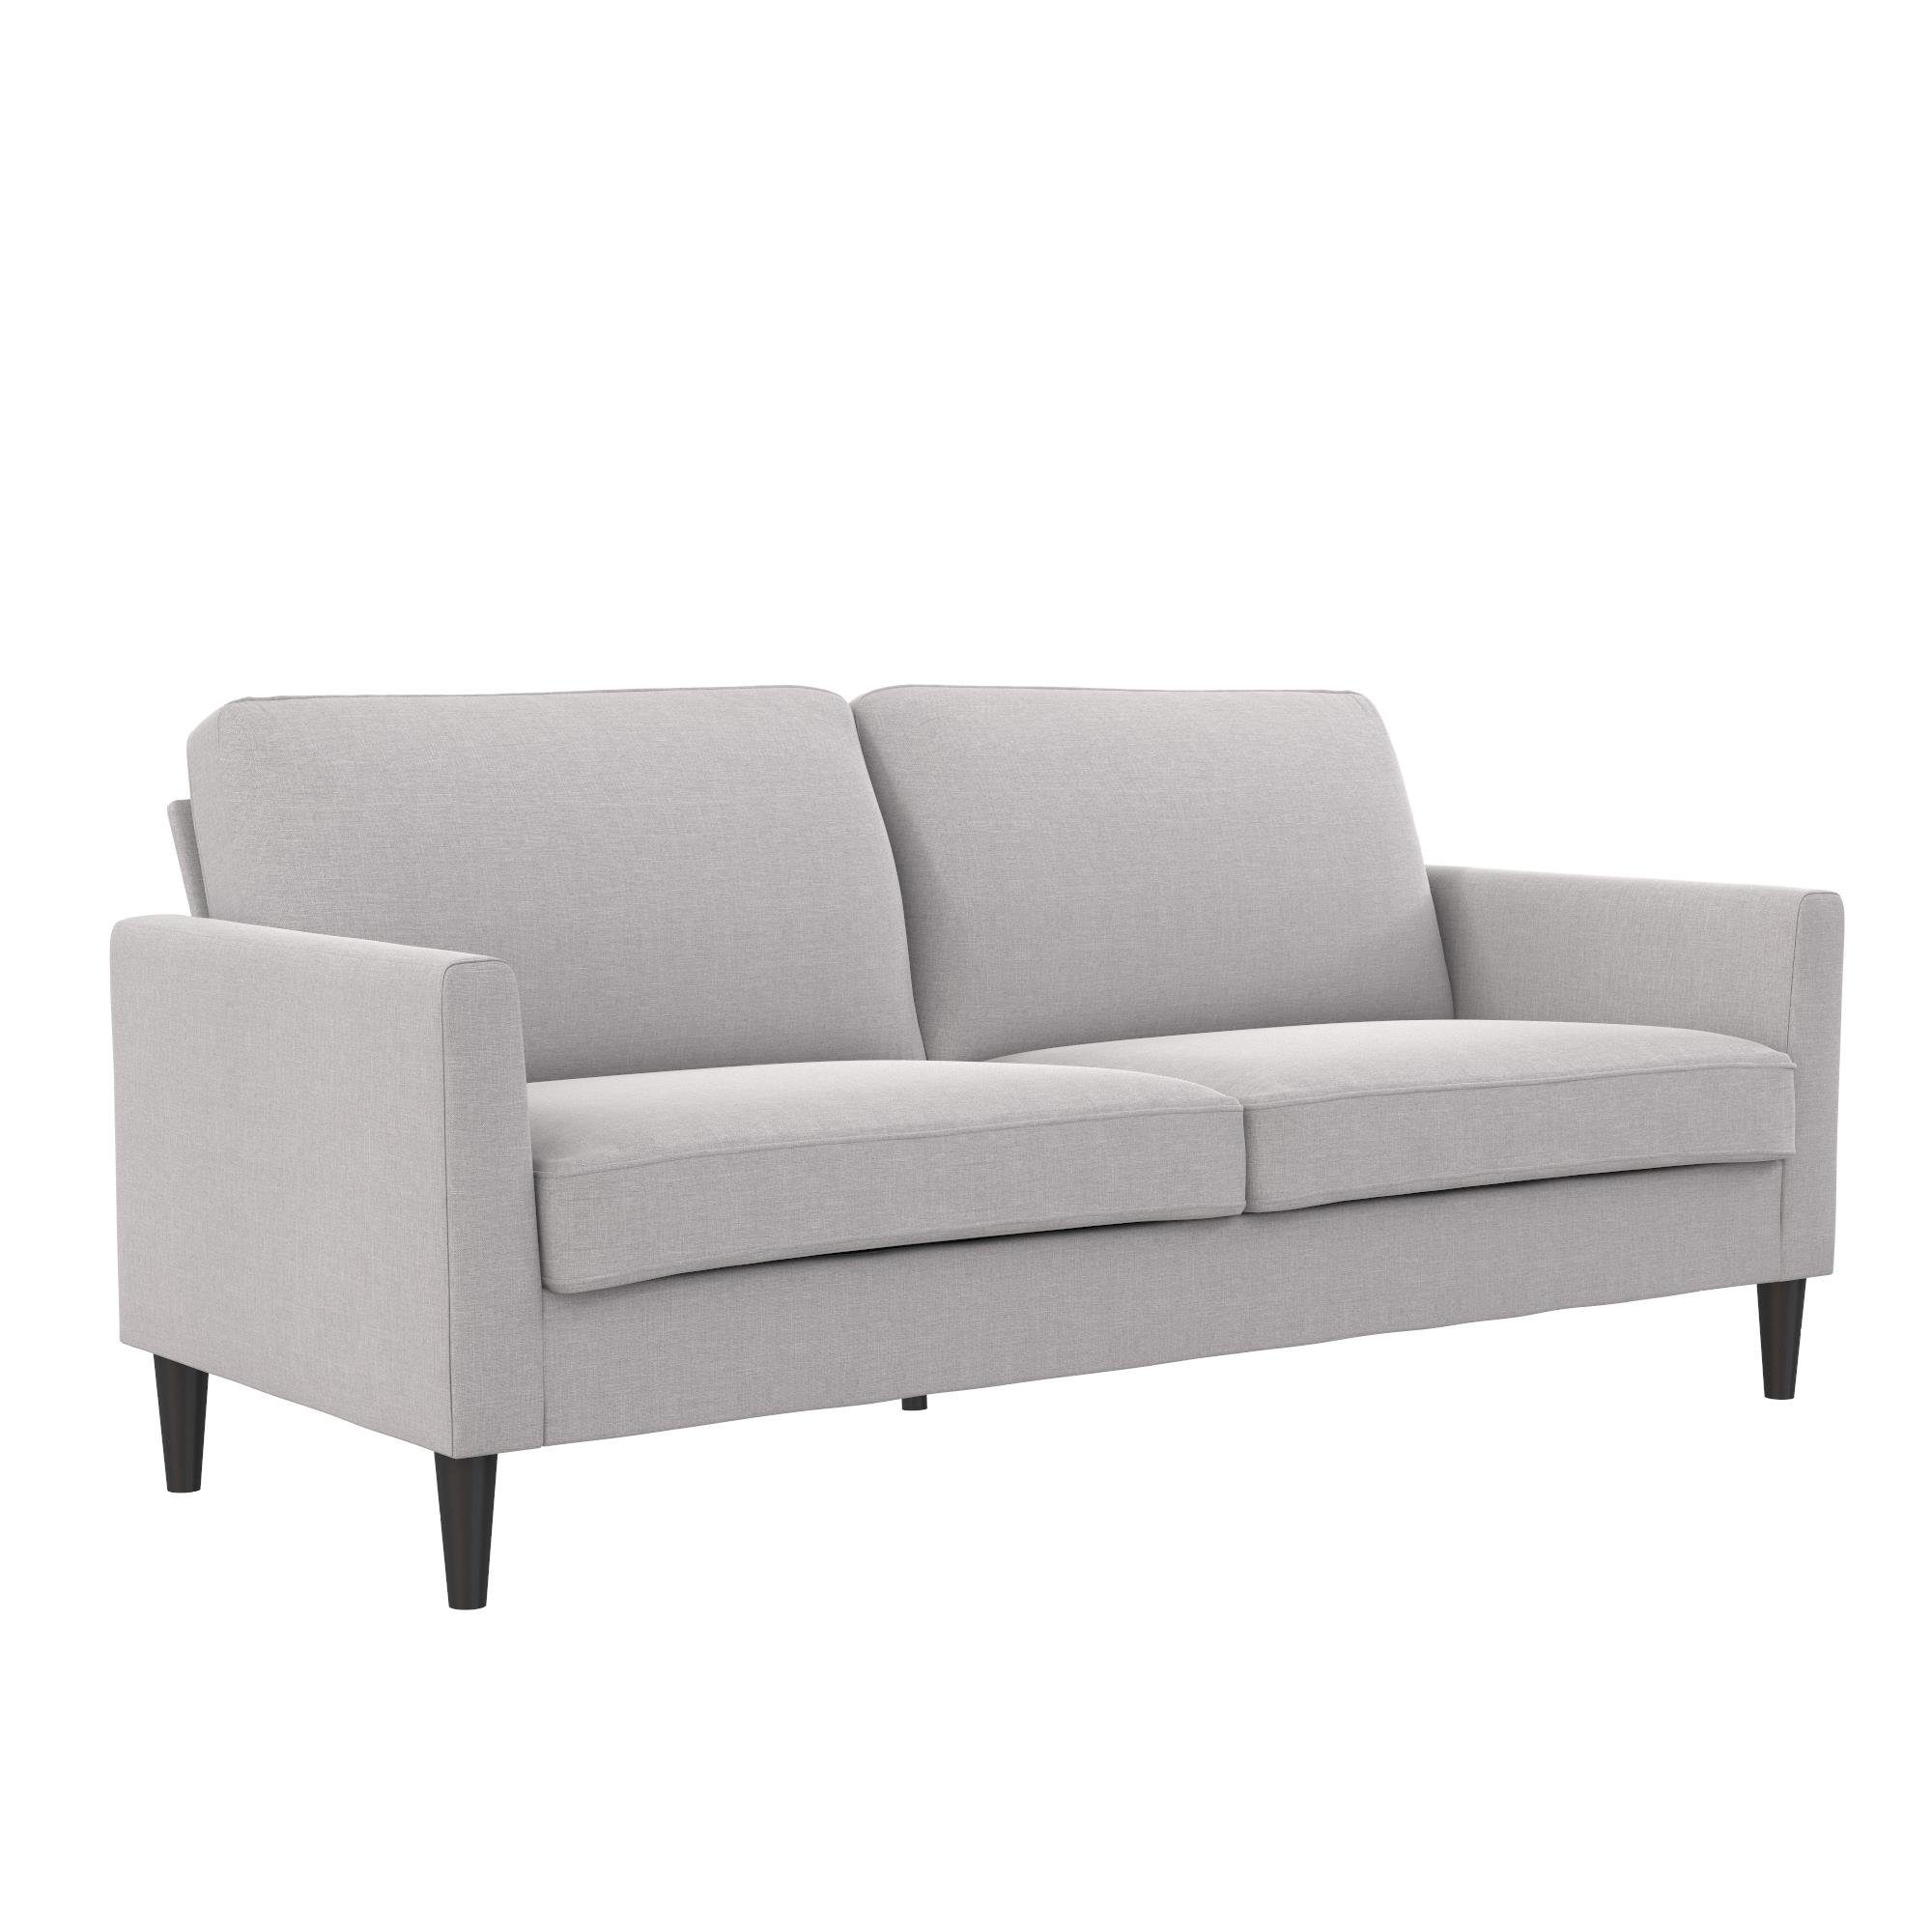 loft24 Sofa Winston, 3-Sitzer Couch, Massivholz Beine, Länge 188 cm hellgrau | Alle Sofas